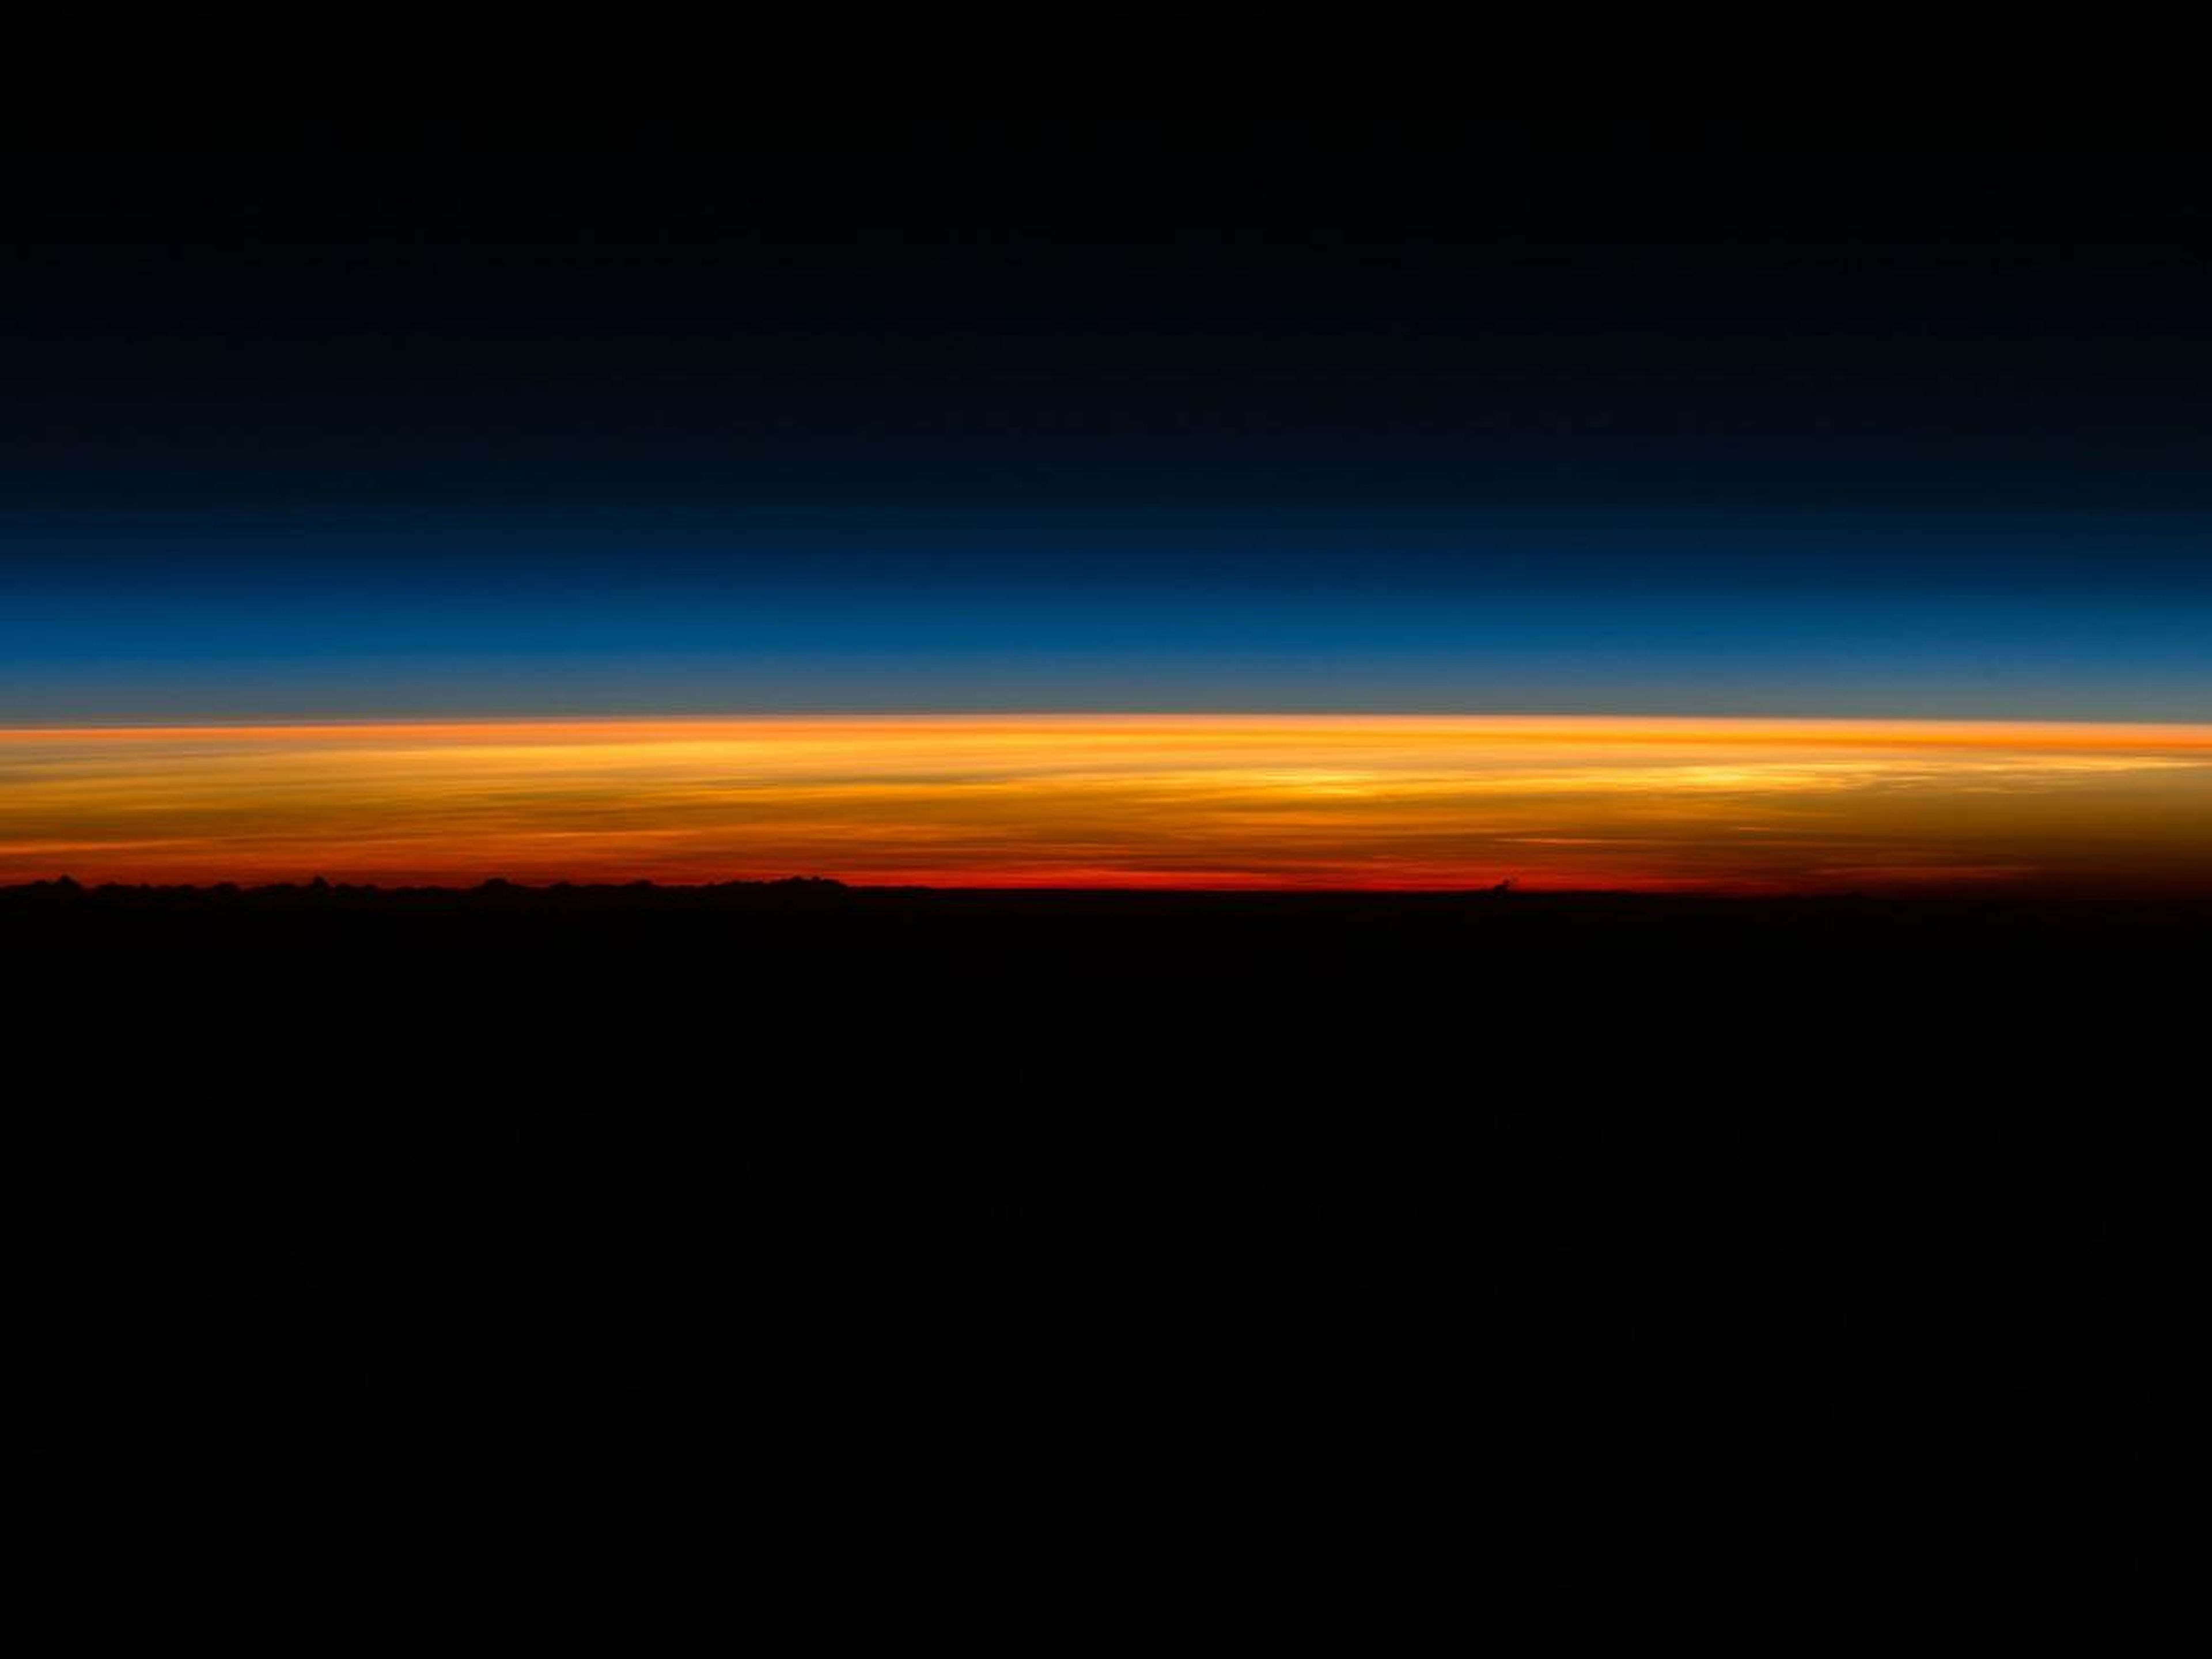 El astronauta Scott Kelly publicó esta foto en Twitter el 1 de marzo de 2016 donde escribió: "¡Levántate y brilla! ¡Mi último #amanecer desde el espacio y después me tengo que ir" 1 de 5. #BuenosDías desde @space_station! #UnAñoEnElEspacio".